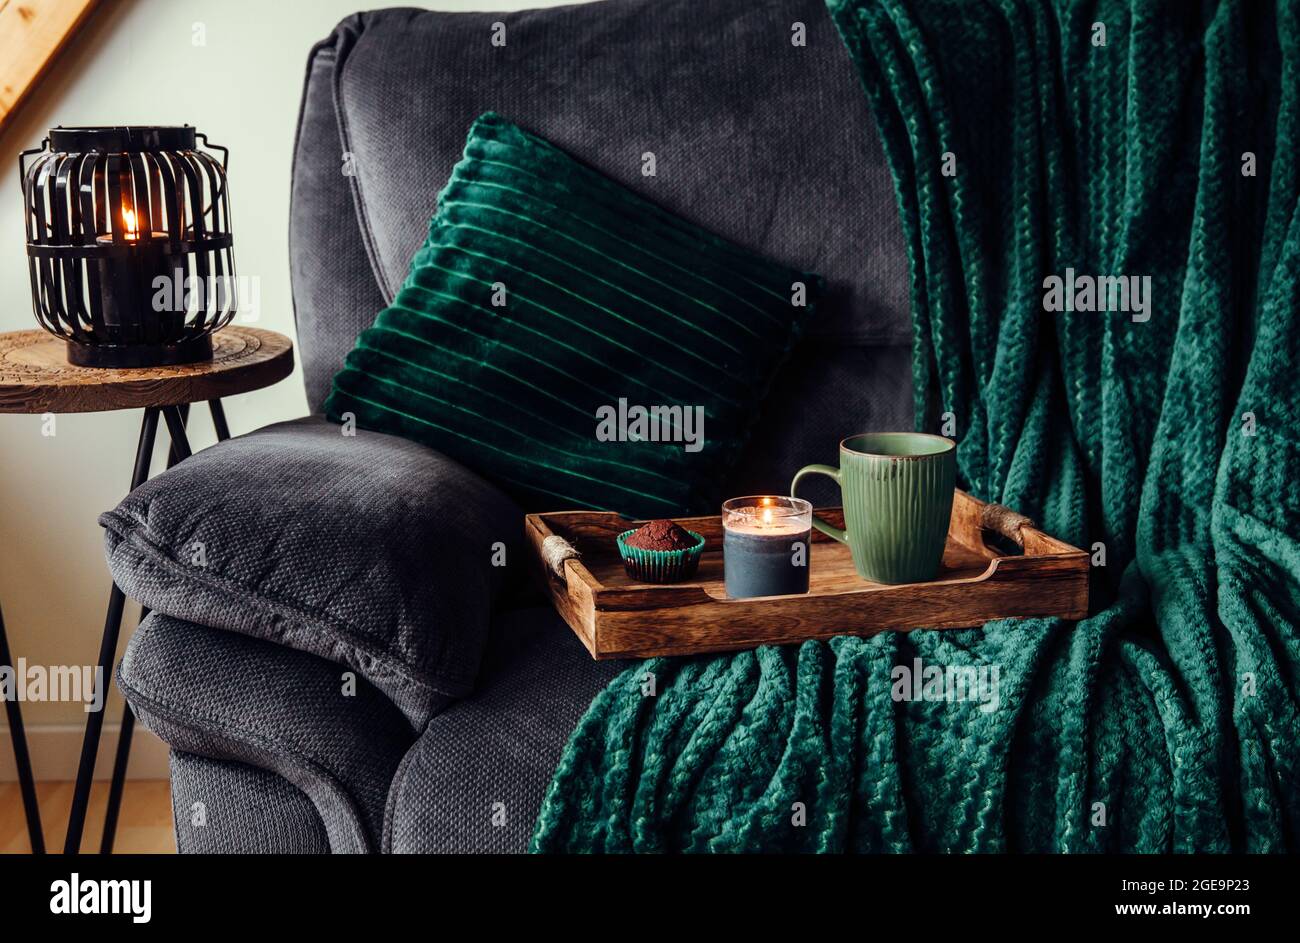 Sofa Pillow Set, Throw Pillows for Couch Green, Modern Pillow